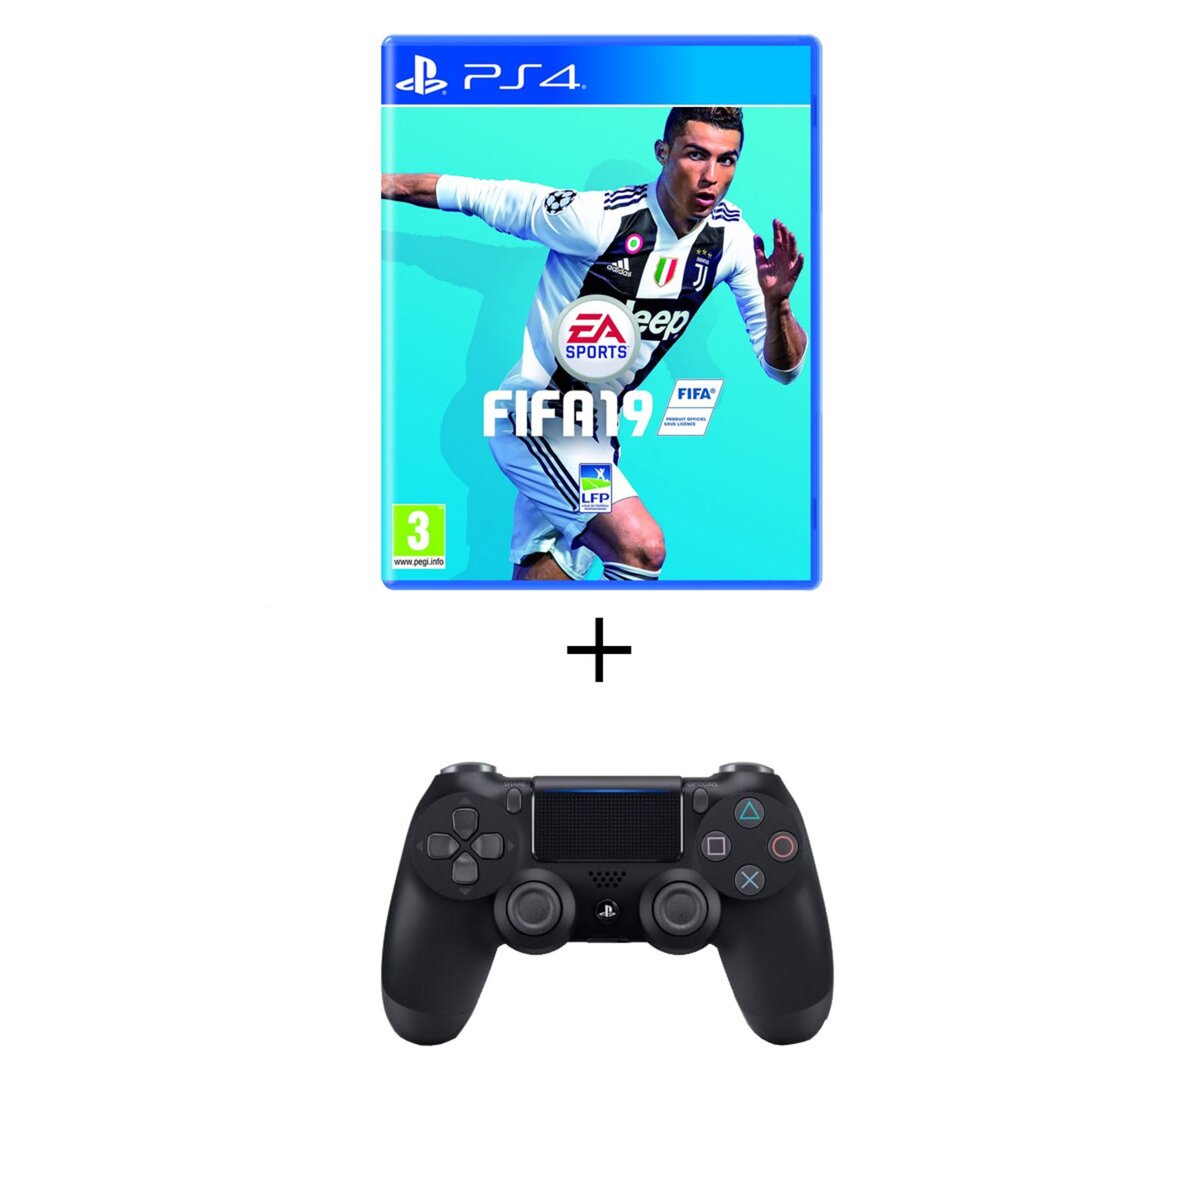 FIFA 19 PS4 + Manette PS4 Dualshock V2 Noire